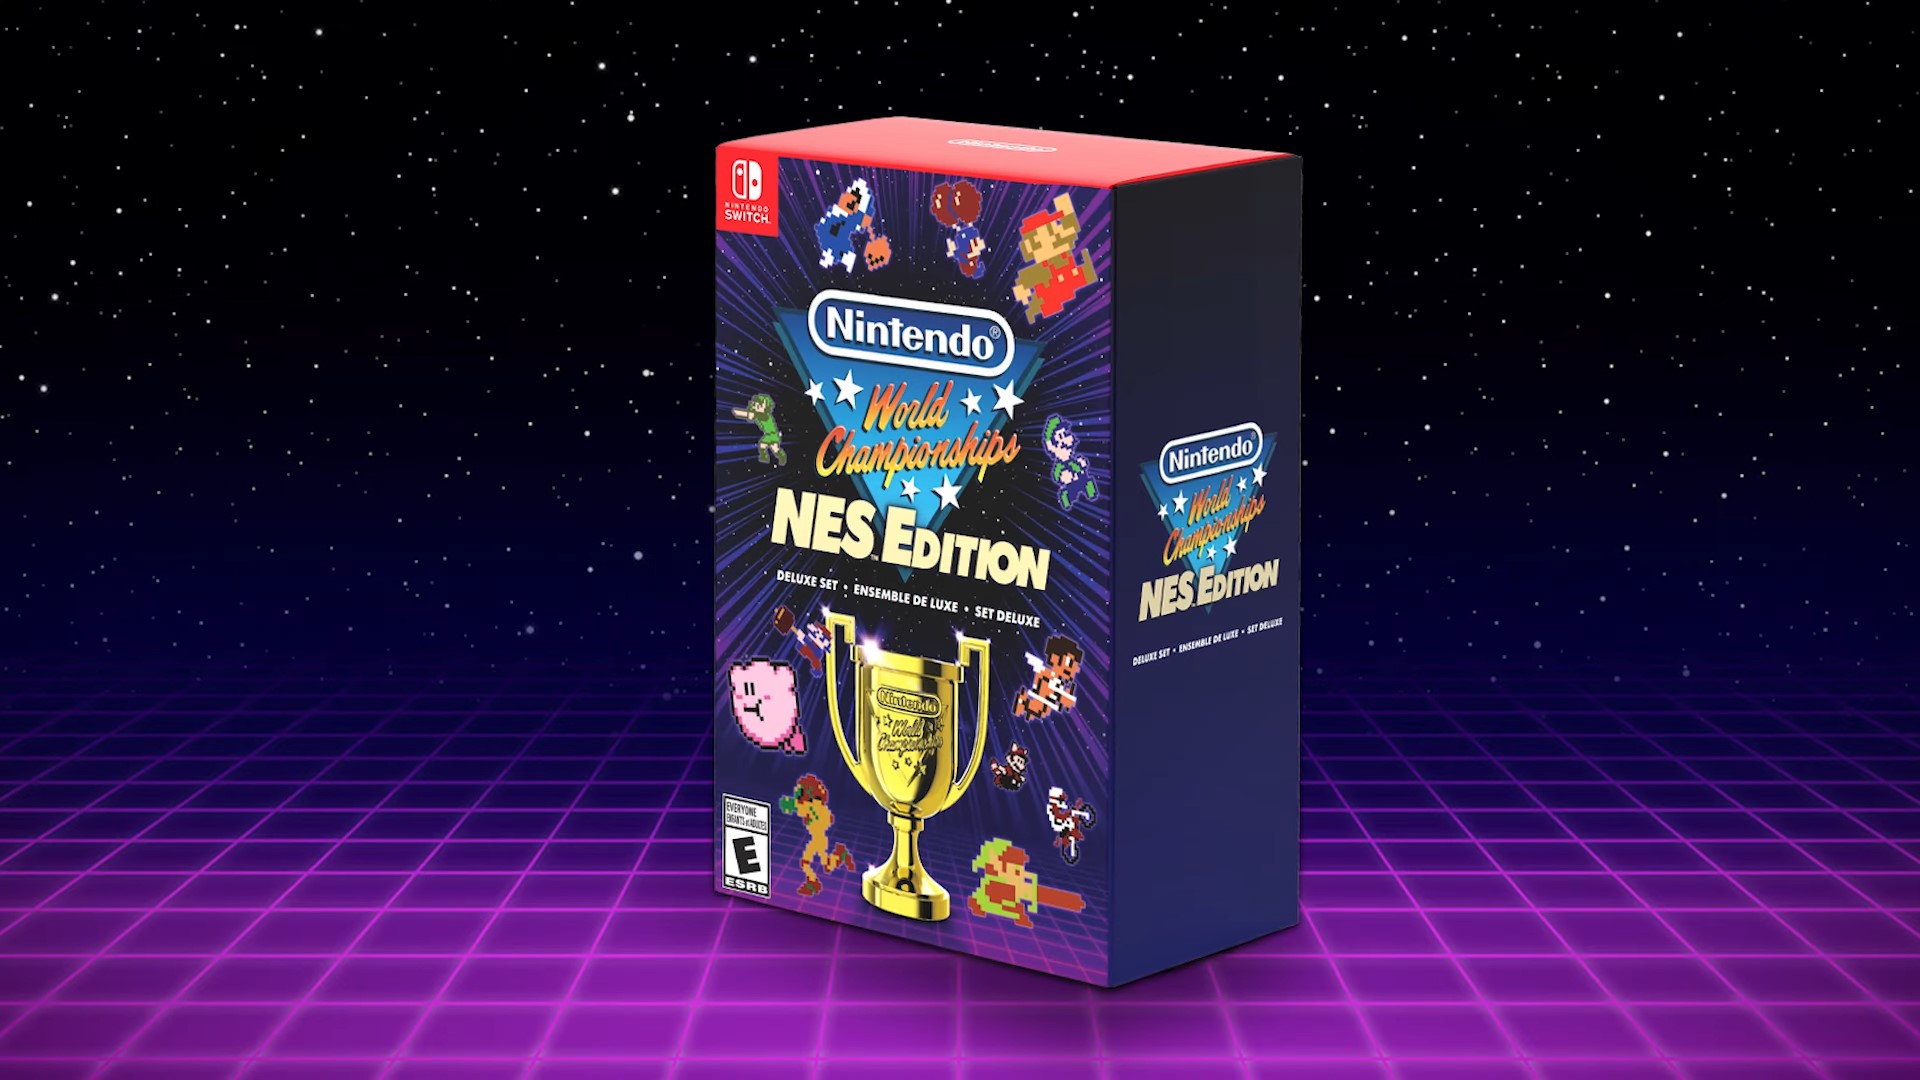 La versión física de Nintendo World Championships: NES Edition.